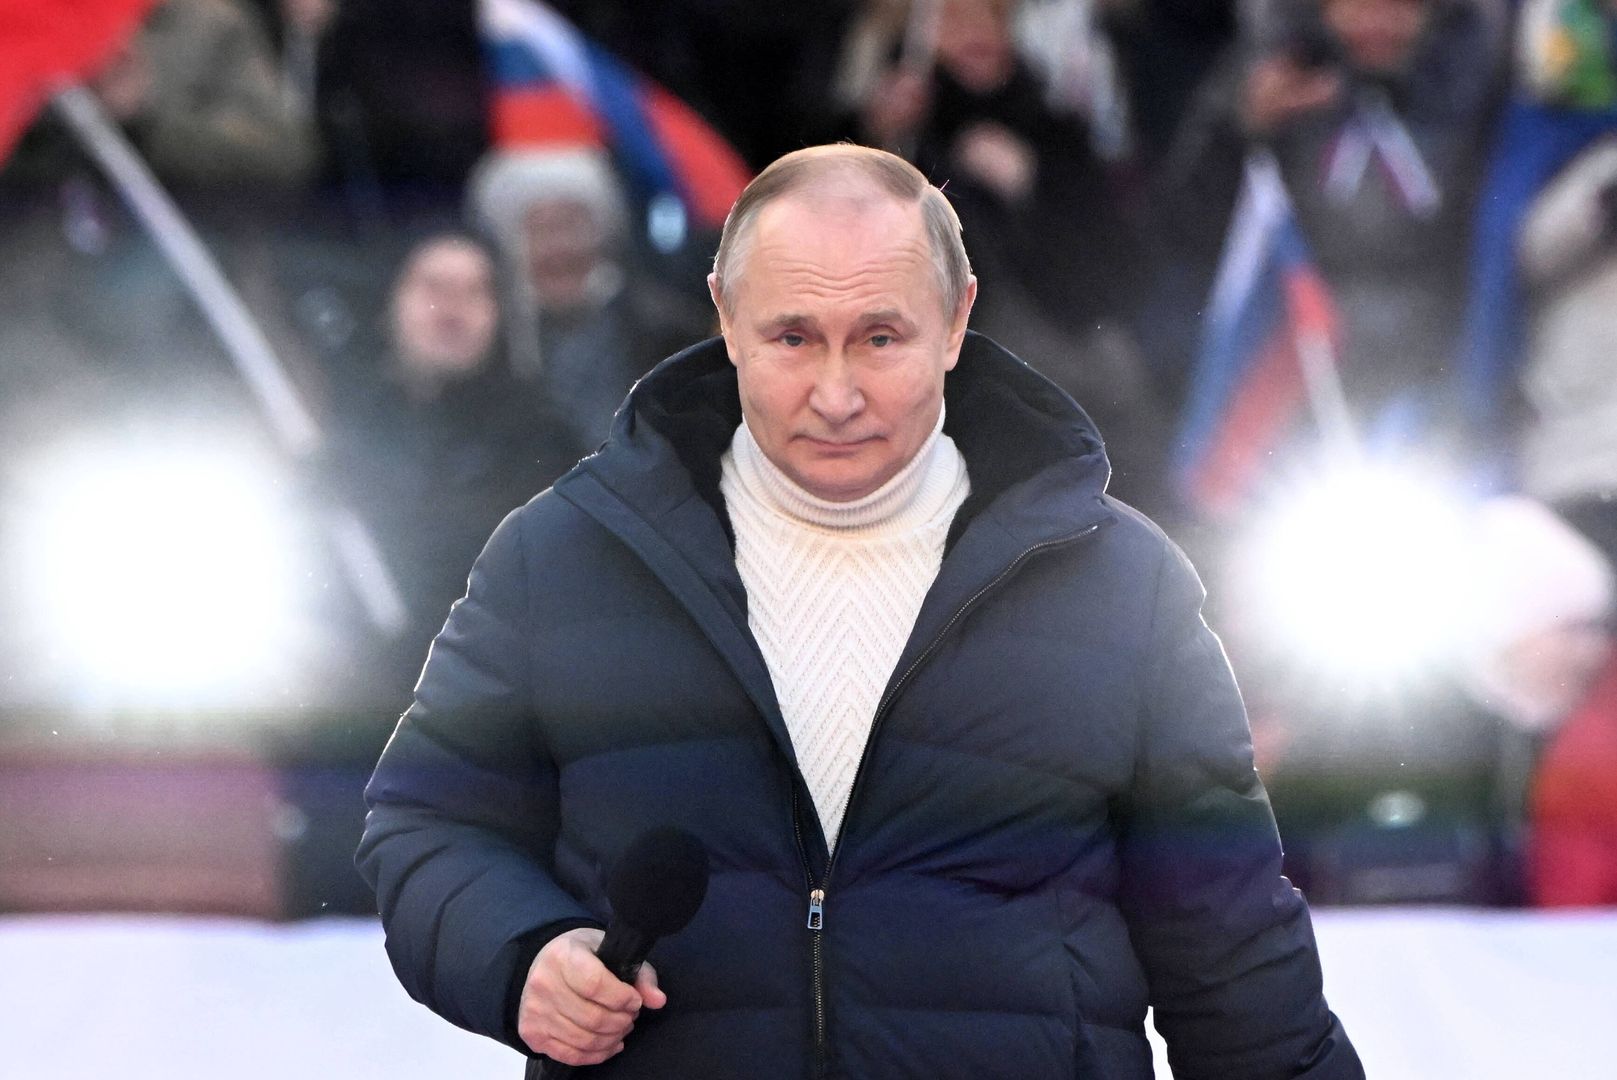 Rosja. W Moskwie coś się szykuje. Po raz pierwszy od 18 marca 2022